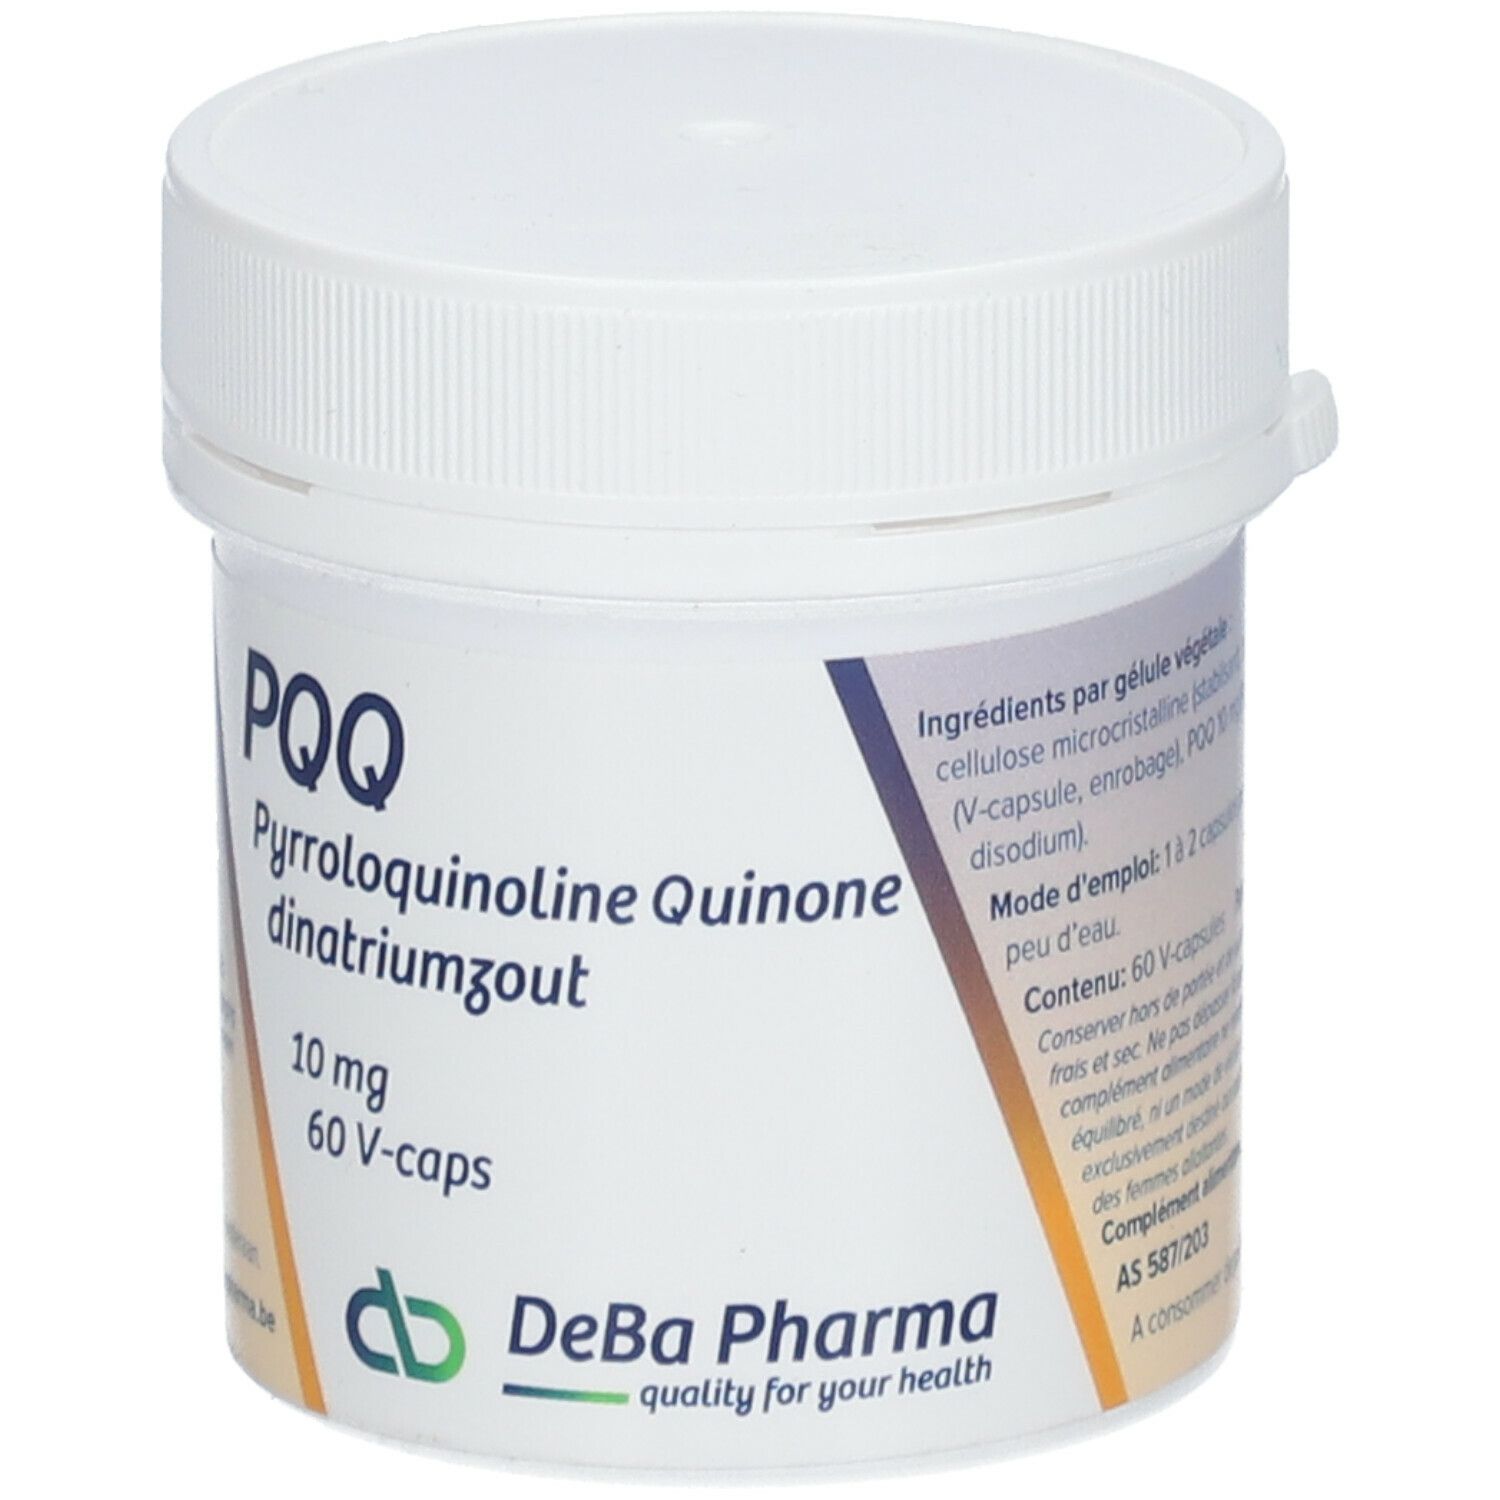 Deba Pharma PQQ 10 mg